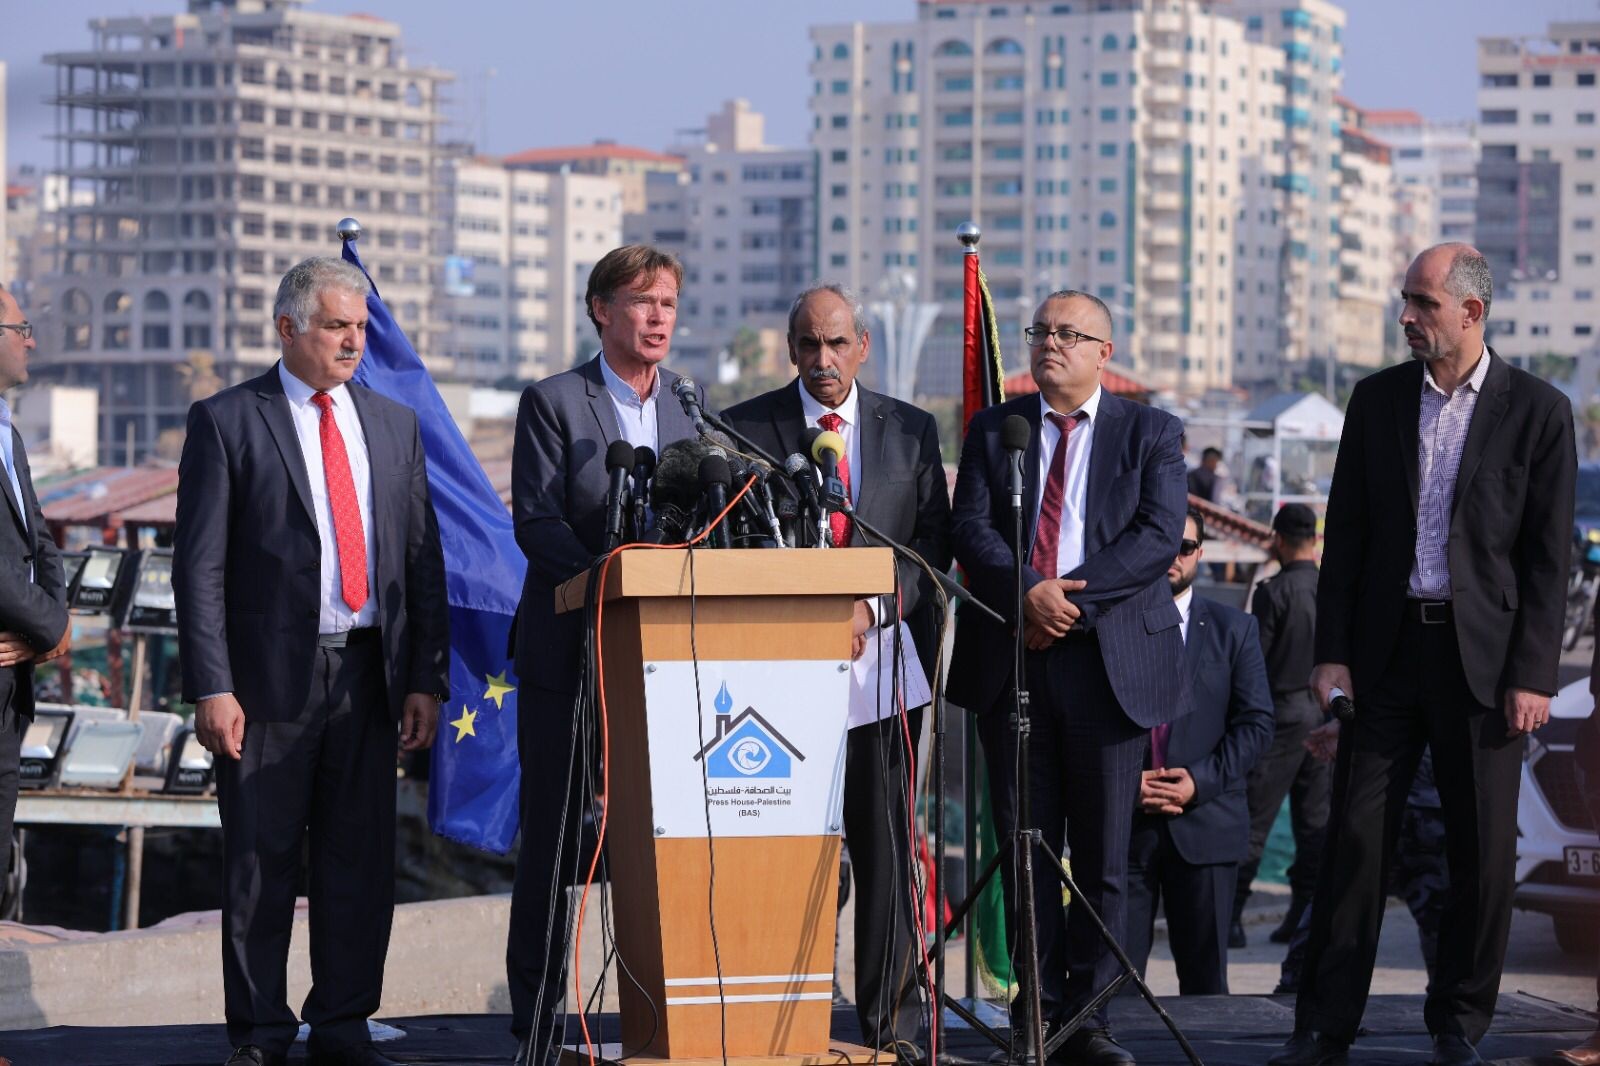 بيت الصحافة يشرف إعلاميا على تنظيم زيارة وفد سفراء دول الاتحاد الأوروبي لغزة